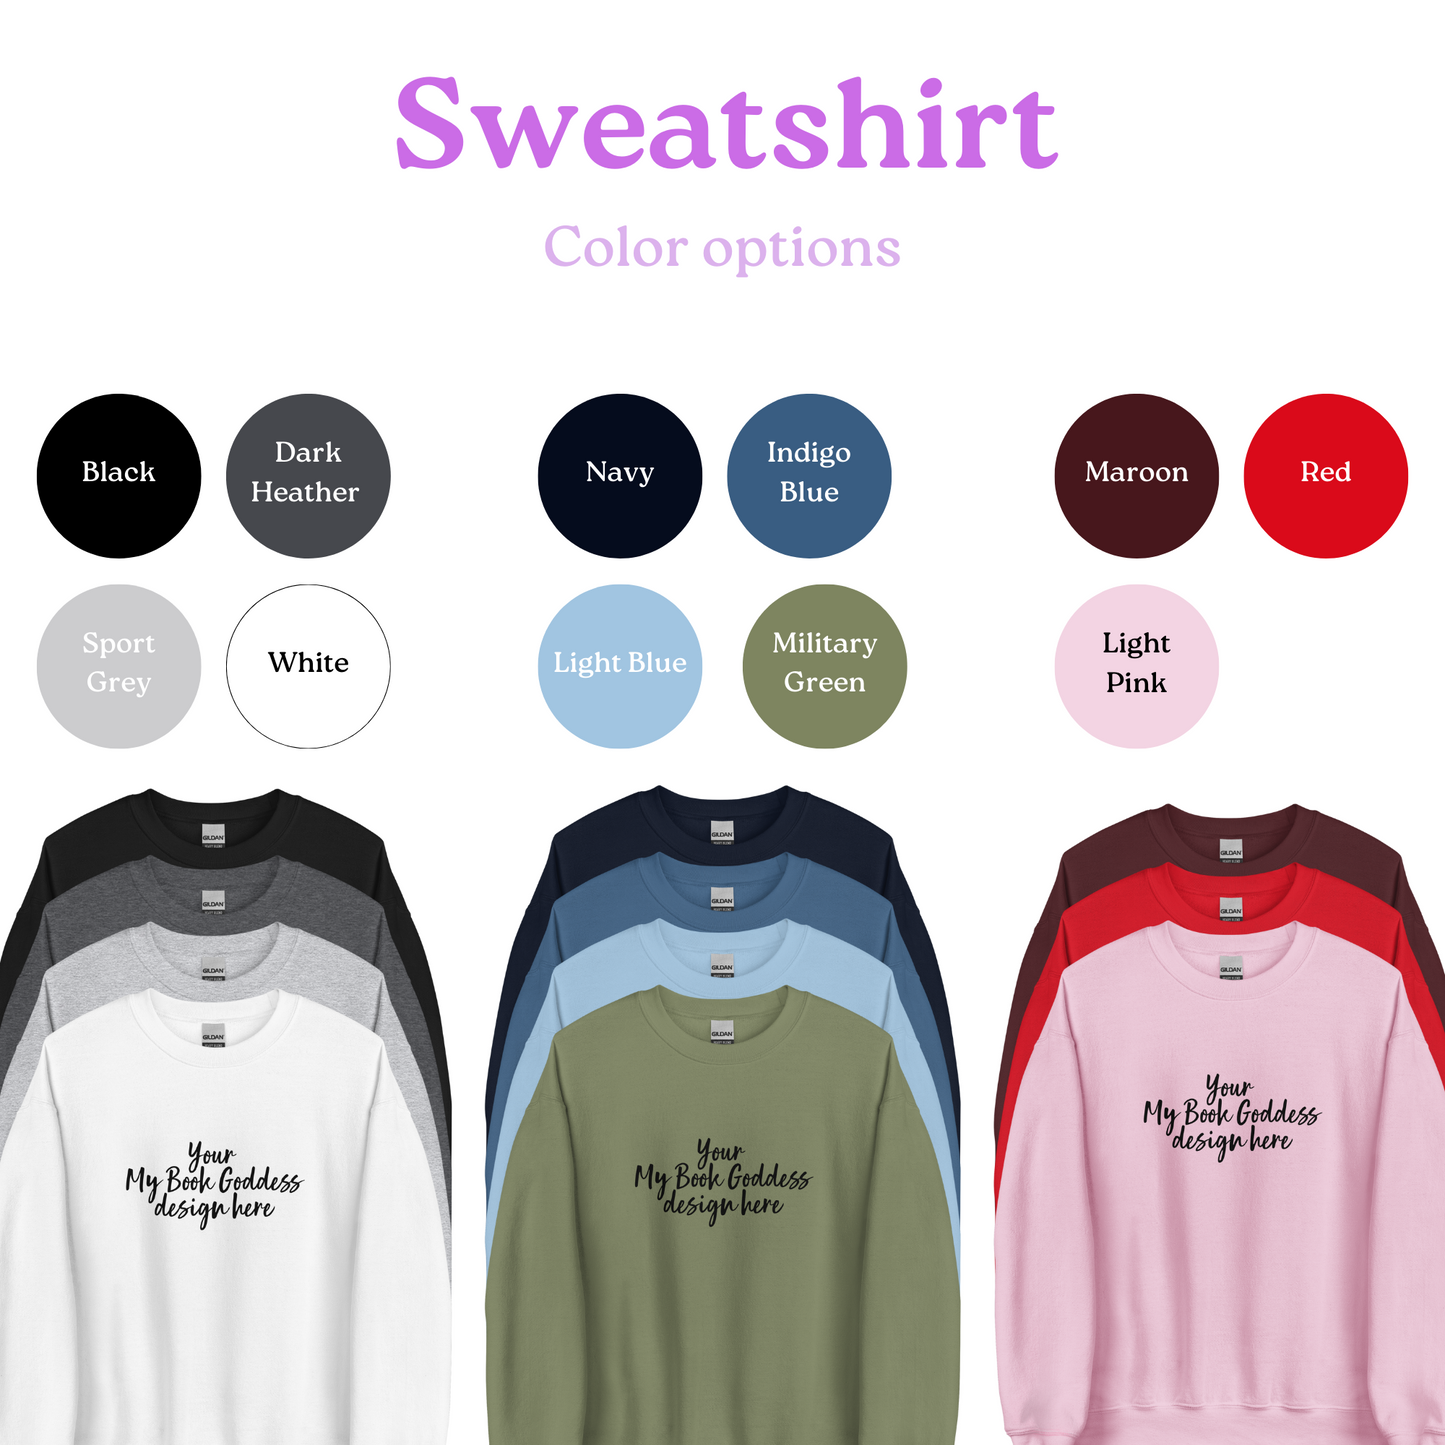 Choose Your Design- Sweatshirt